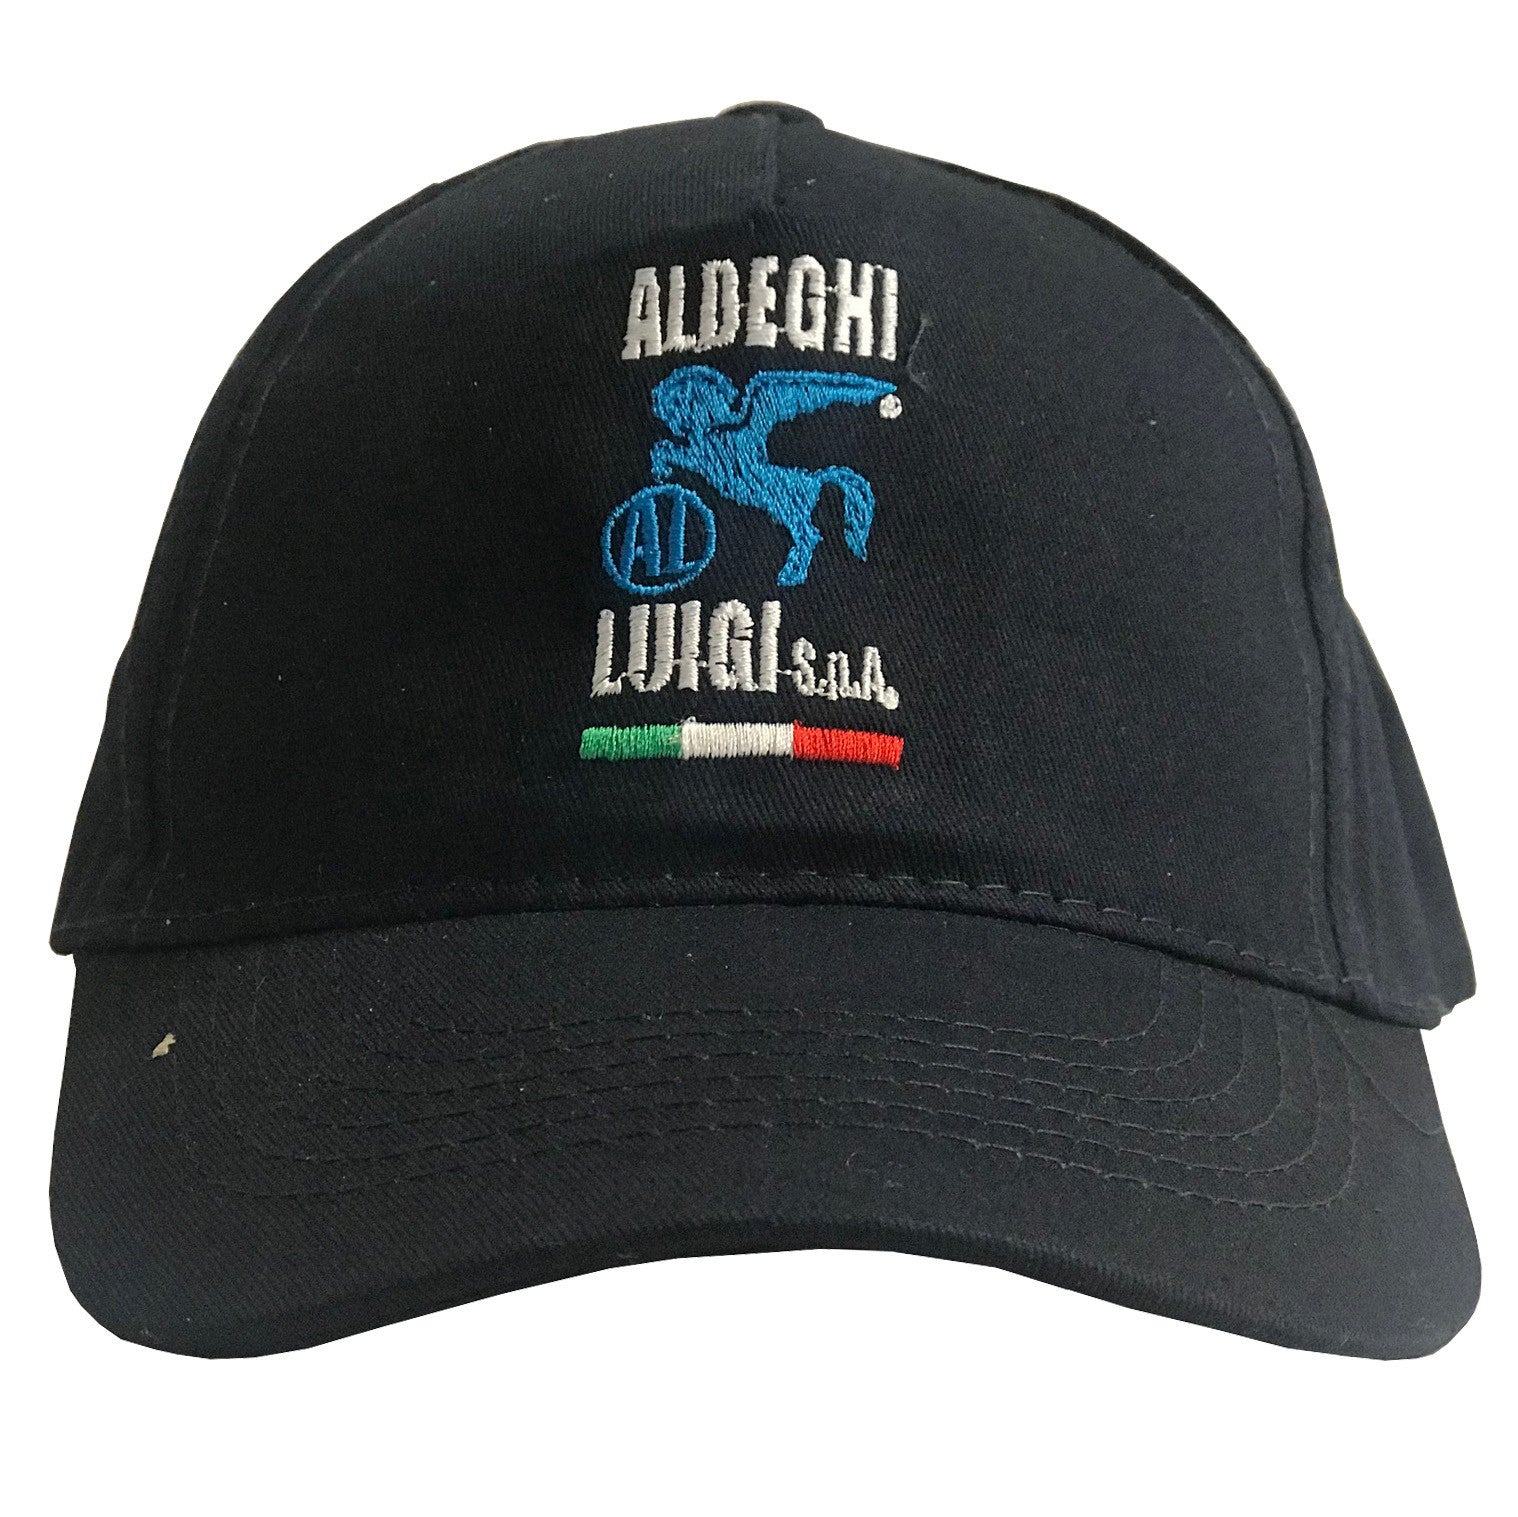 Cappellino da golf aldeghi ALDEGHI LUIGI SPA